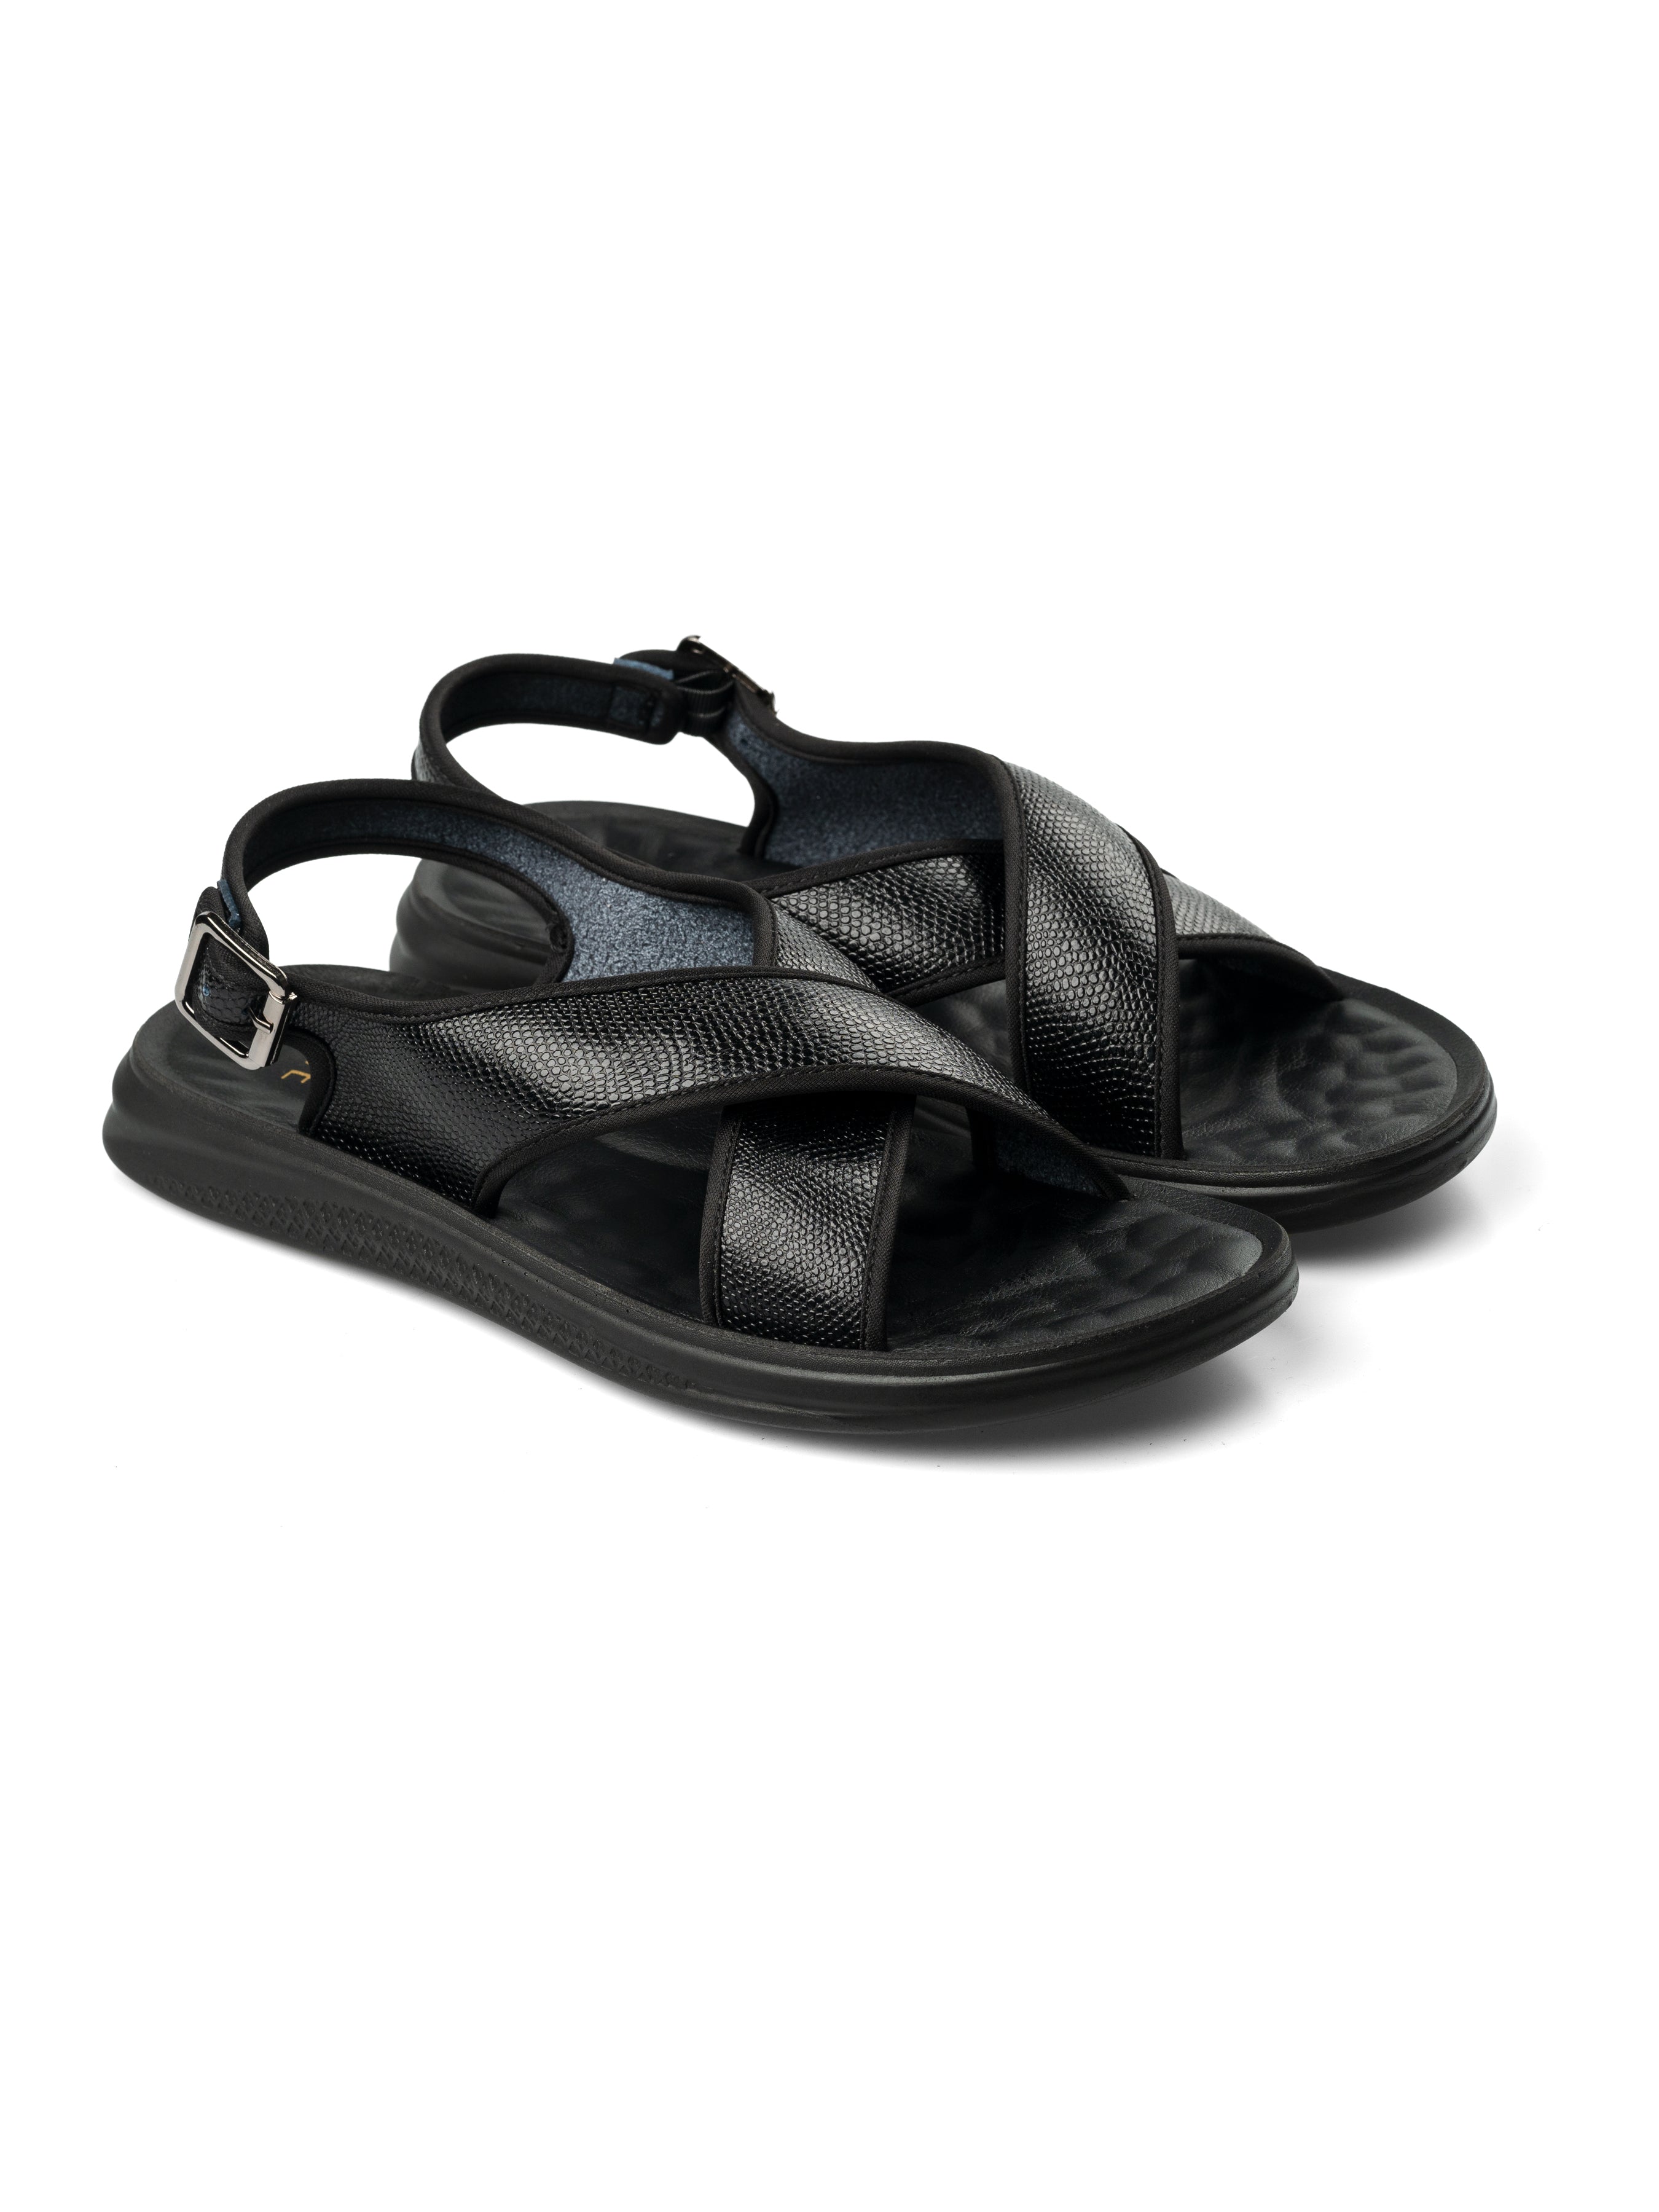 Slingback Cross Strap Sandal - Black Phyton